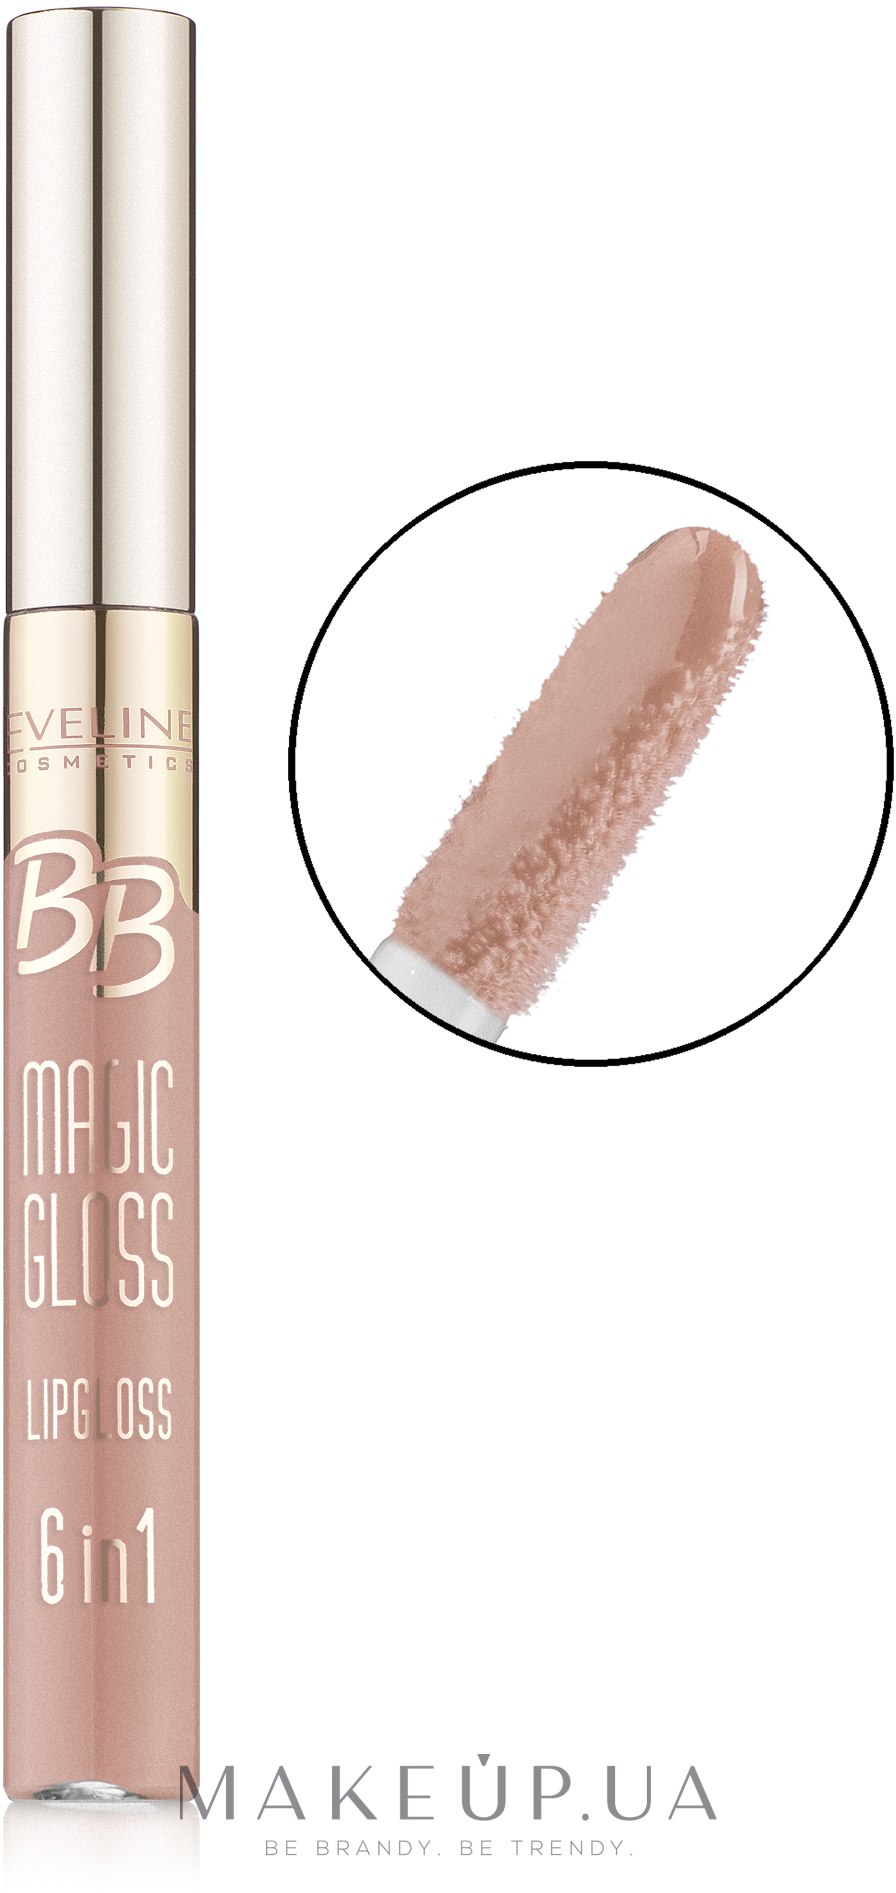 Блиск для губ - Eveline Cosmetics BB Magic Gloss Lipgloss 6 w 1 — фото 358